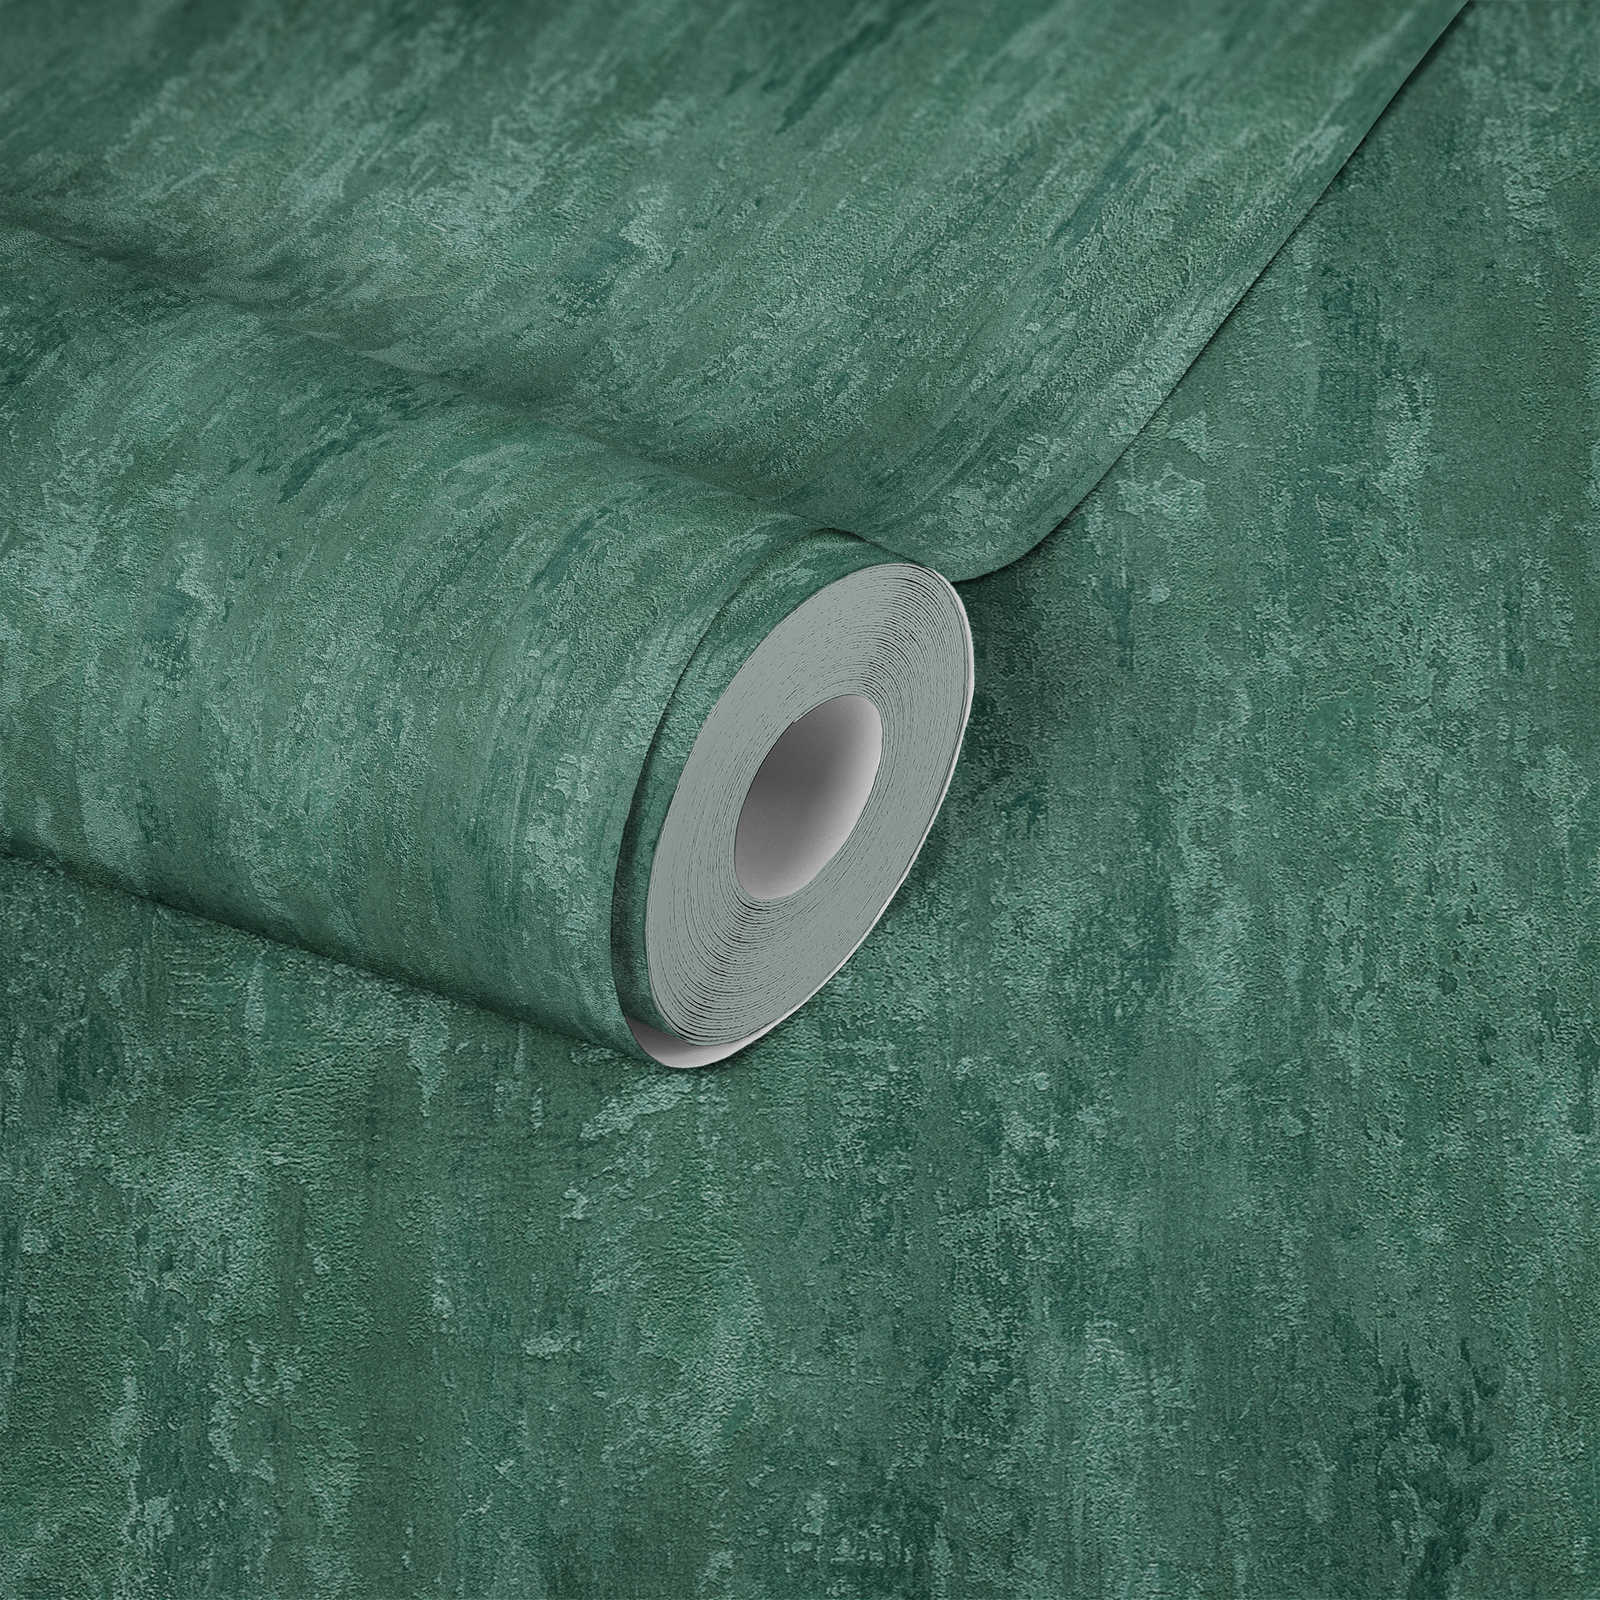             papel pintado estilo industrial con efecto de textura - verde, metálico
        